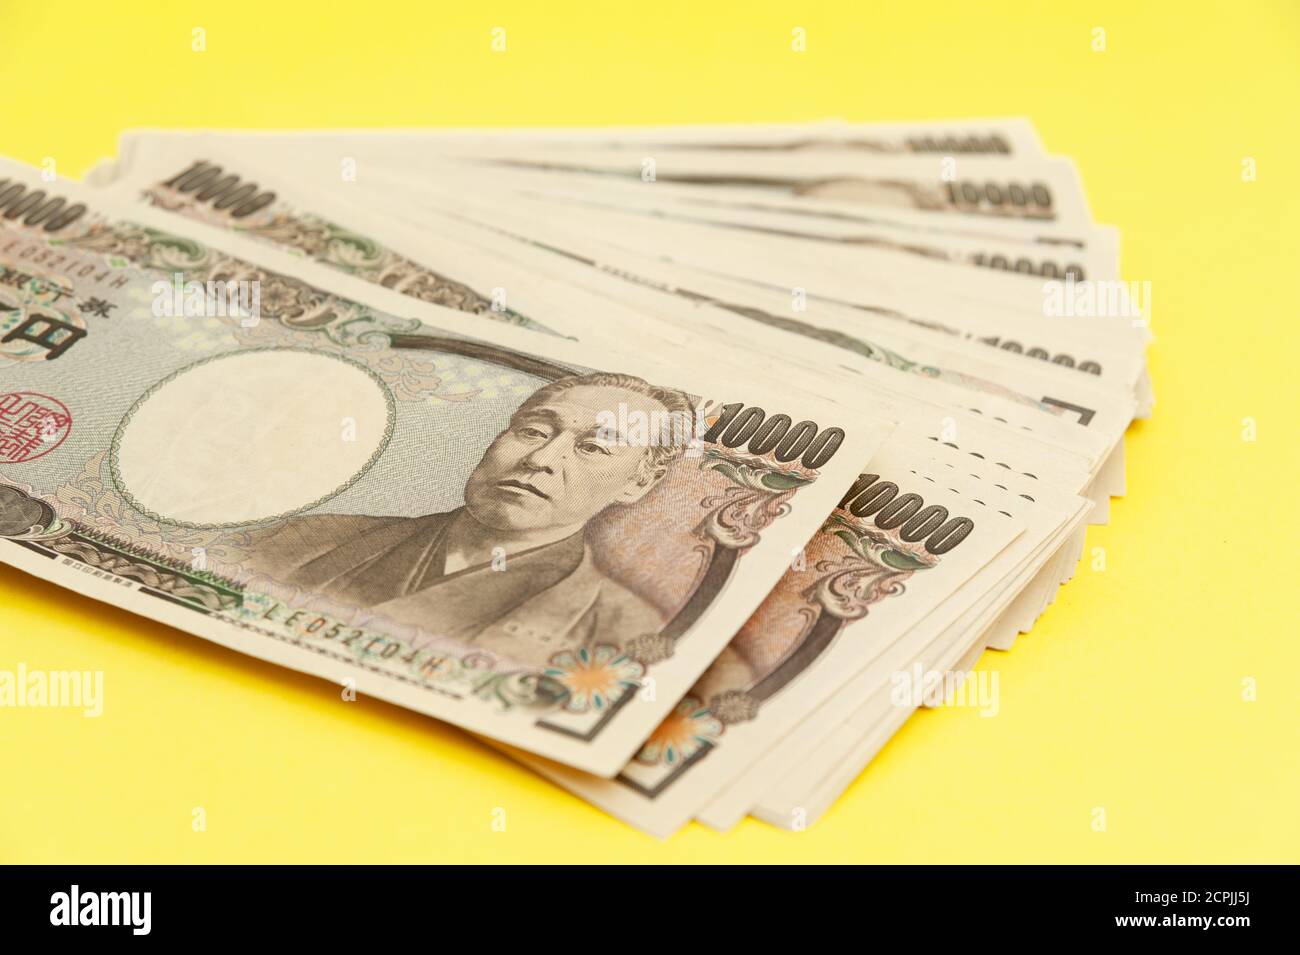 Diecimila yen (10,000 yen) banconote accatastate. Denaro giapponese. Carta denaro. Isolato su sfondo giallo. Vista dall'alto. Foto Stock